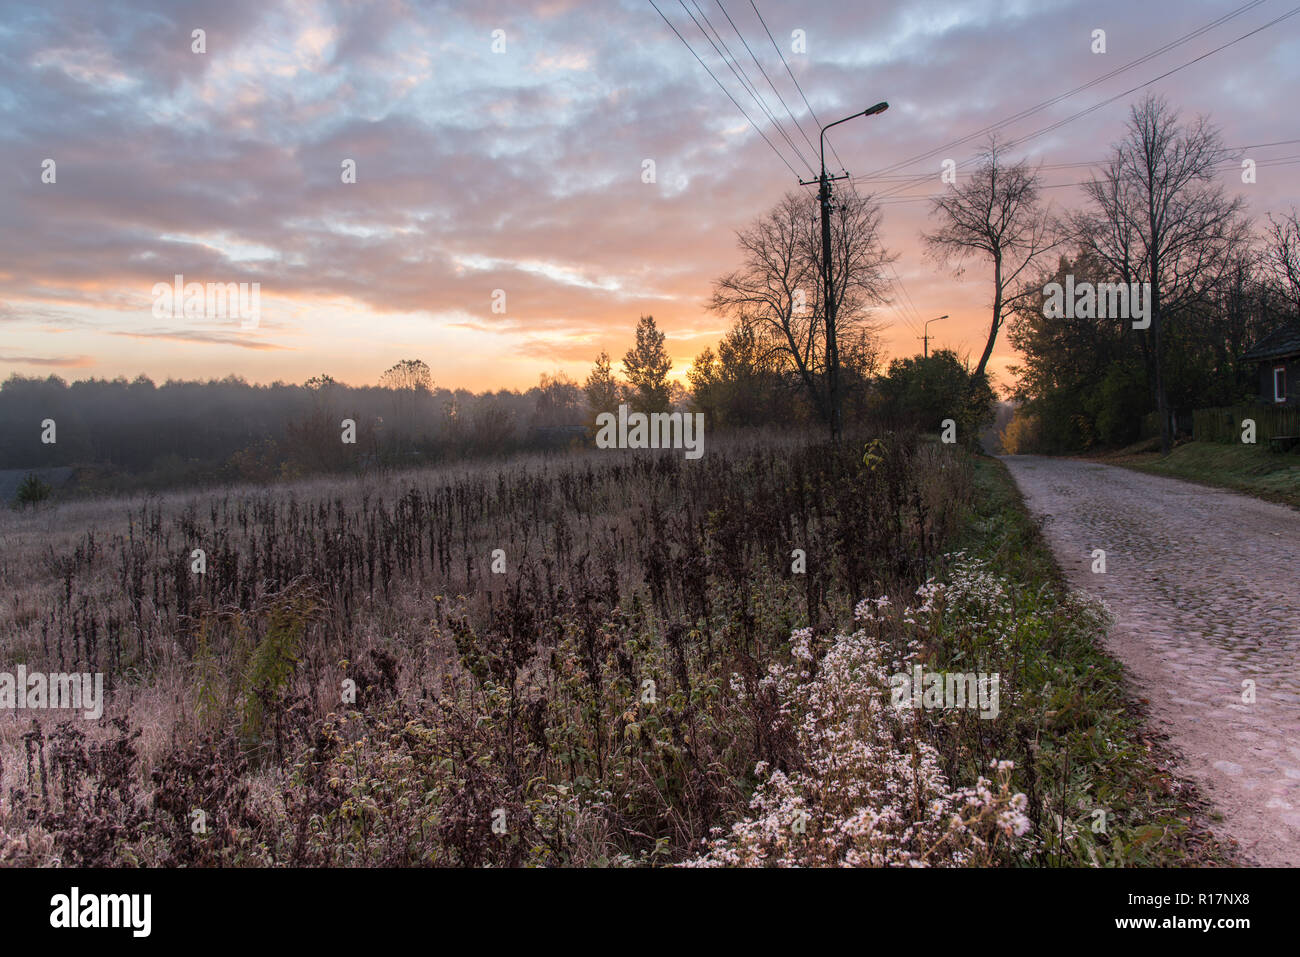 Sunrise, nebbia, raggi solari, mattina, paesaggio, visualizzare in campagna, terra di campi arati, foglie, autunno Foto Stock